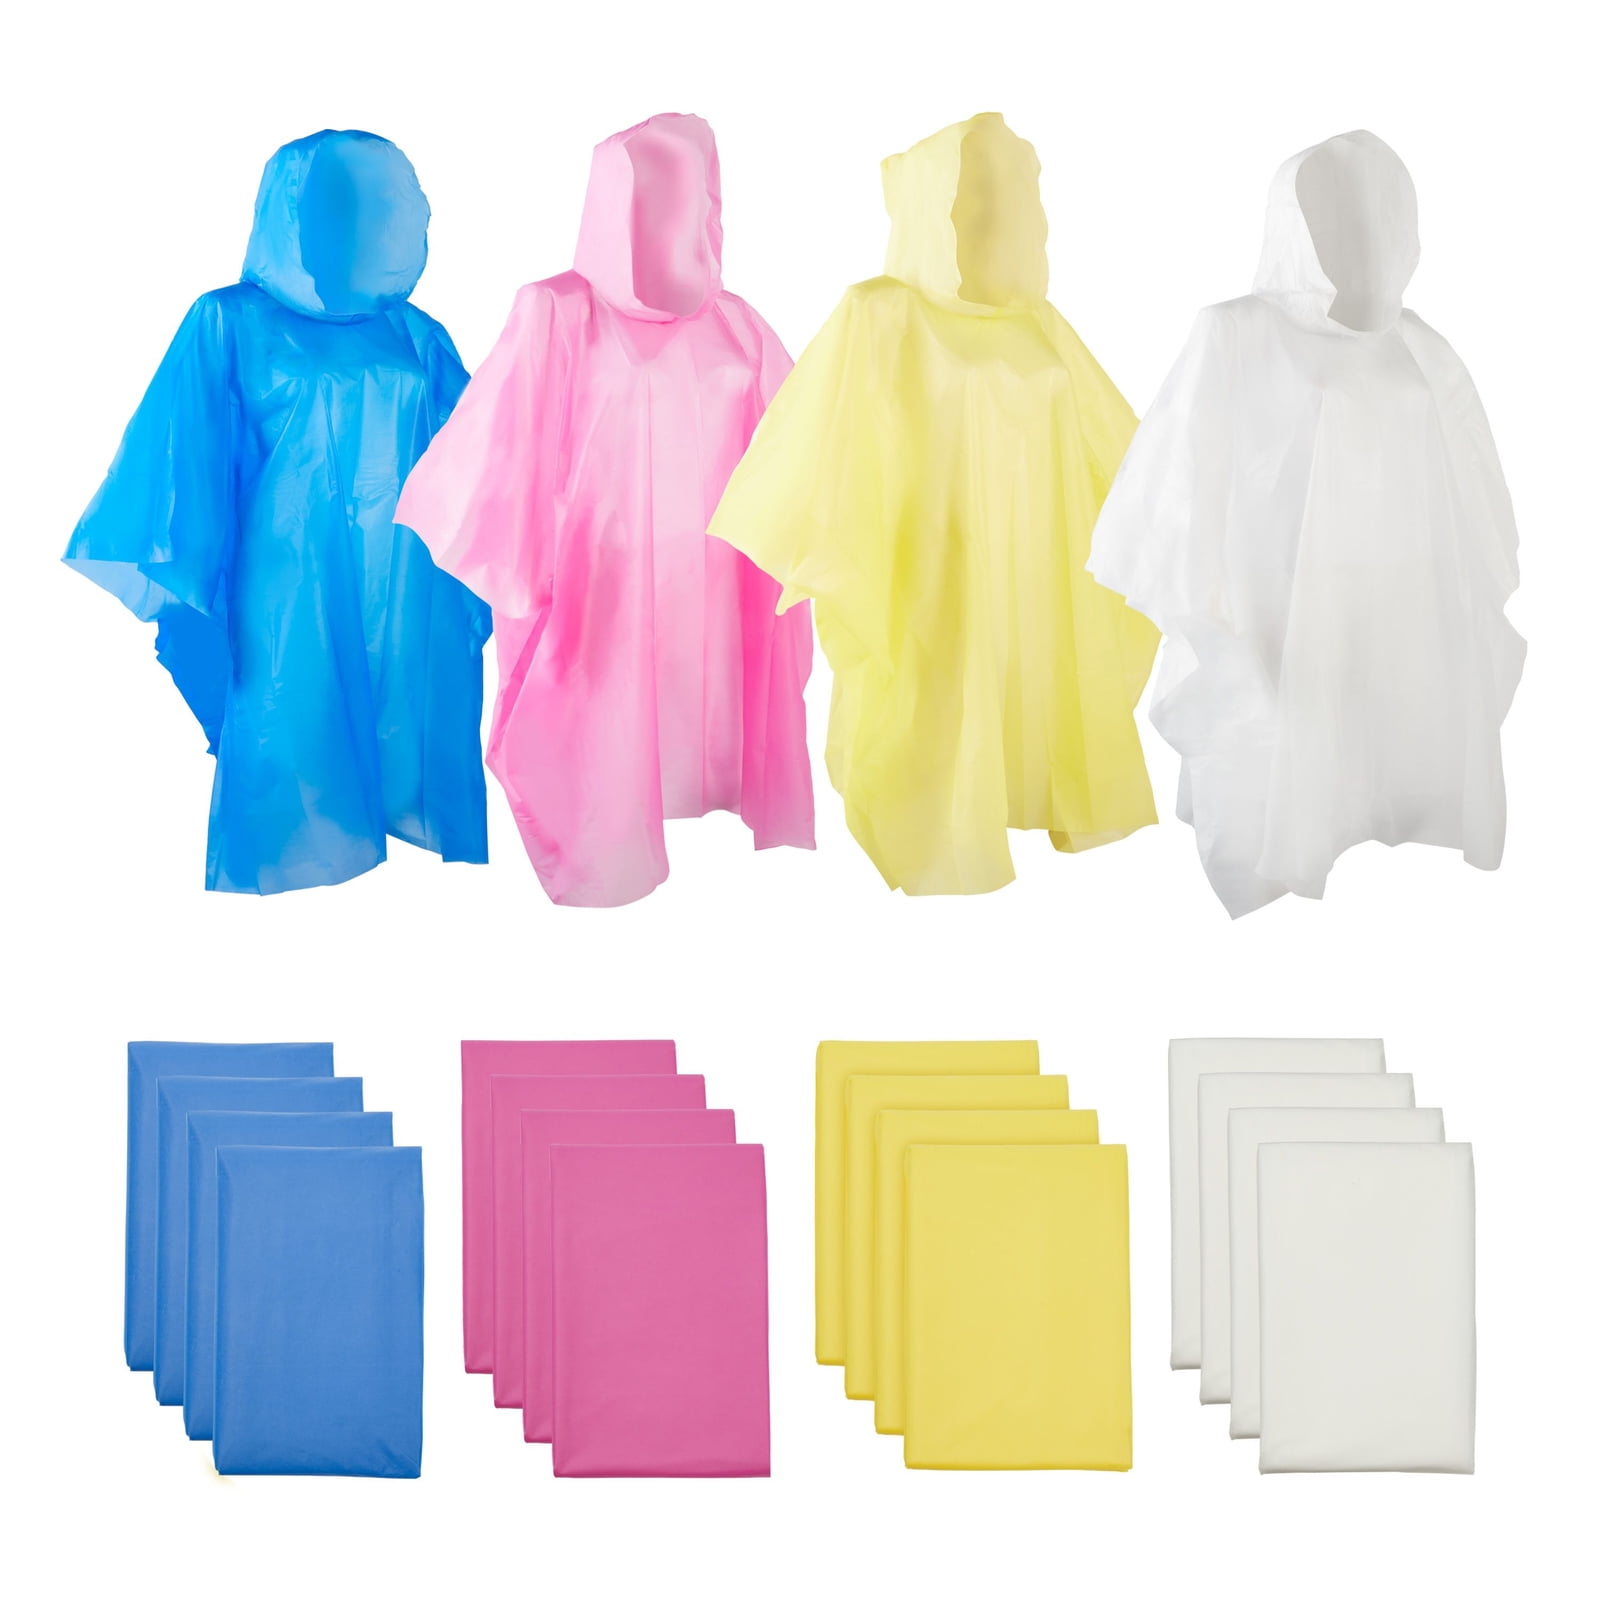 Details about   Disposable Adults Poncho Rain Jacket Rain Coat Unisex Rain Cape Emergency Womens show original title 